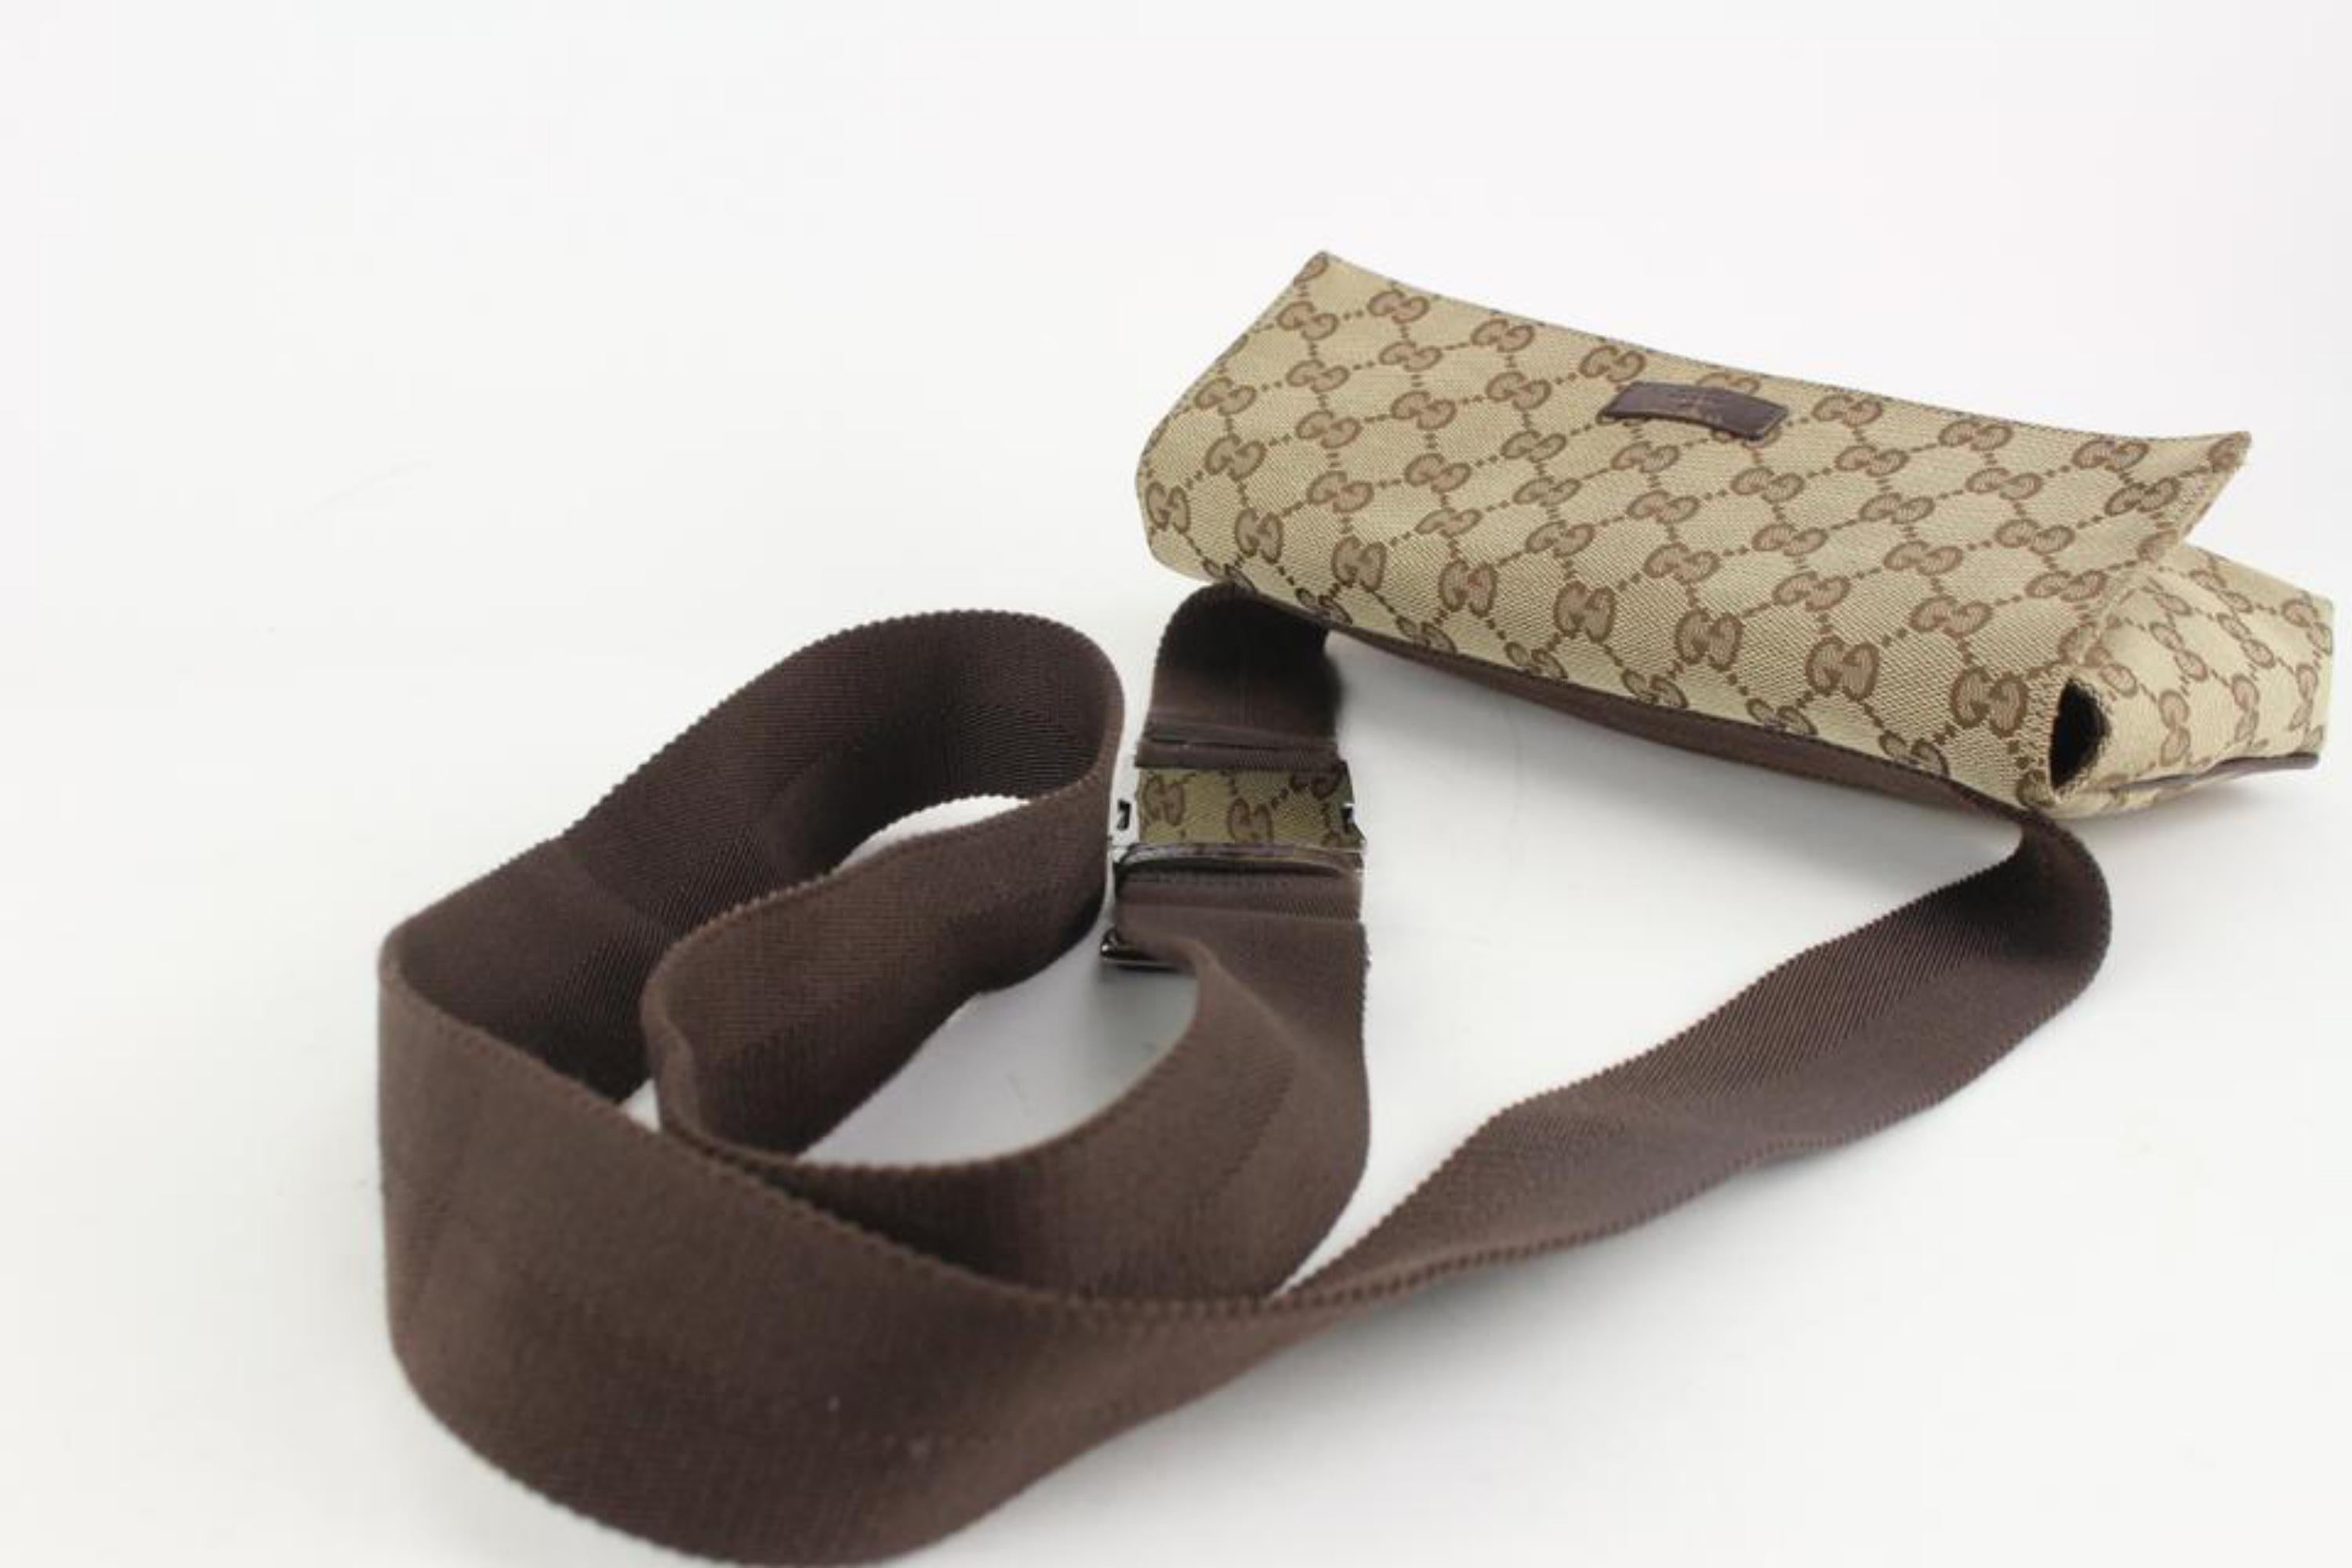 Gucci Monogram GG Flap Belt Bag Fanny Pack Waist Pouch 1215g46 5